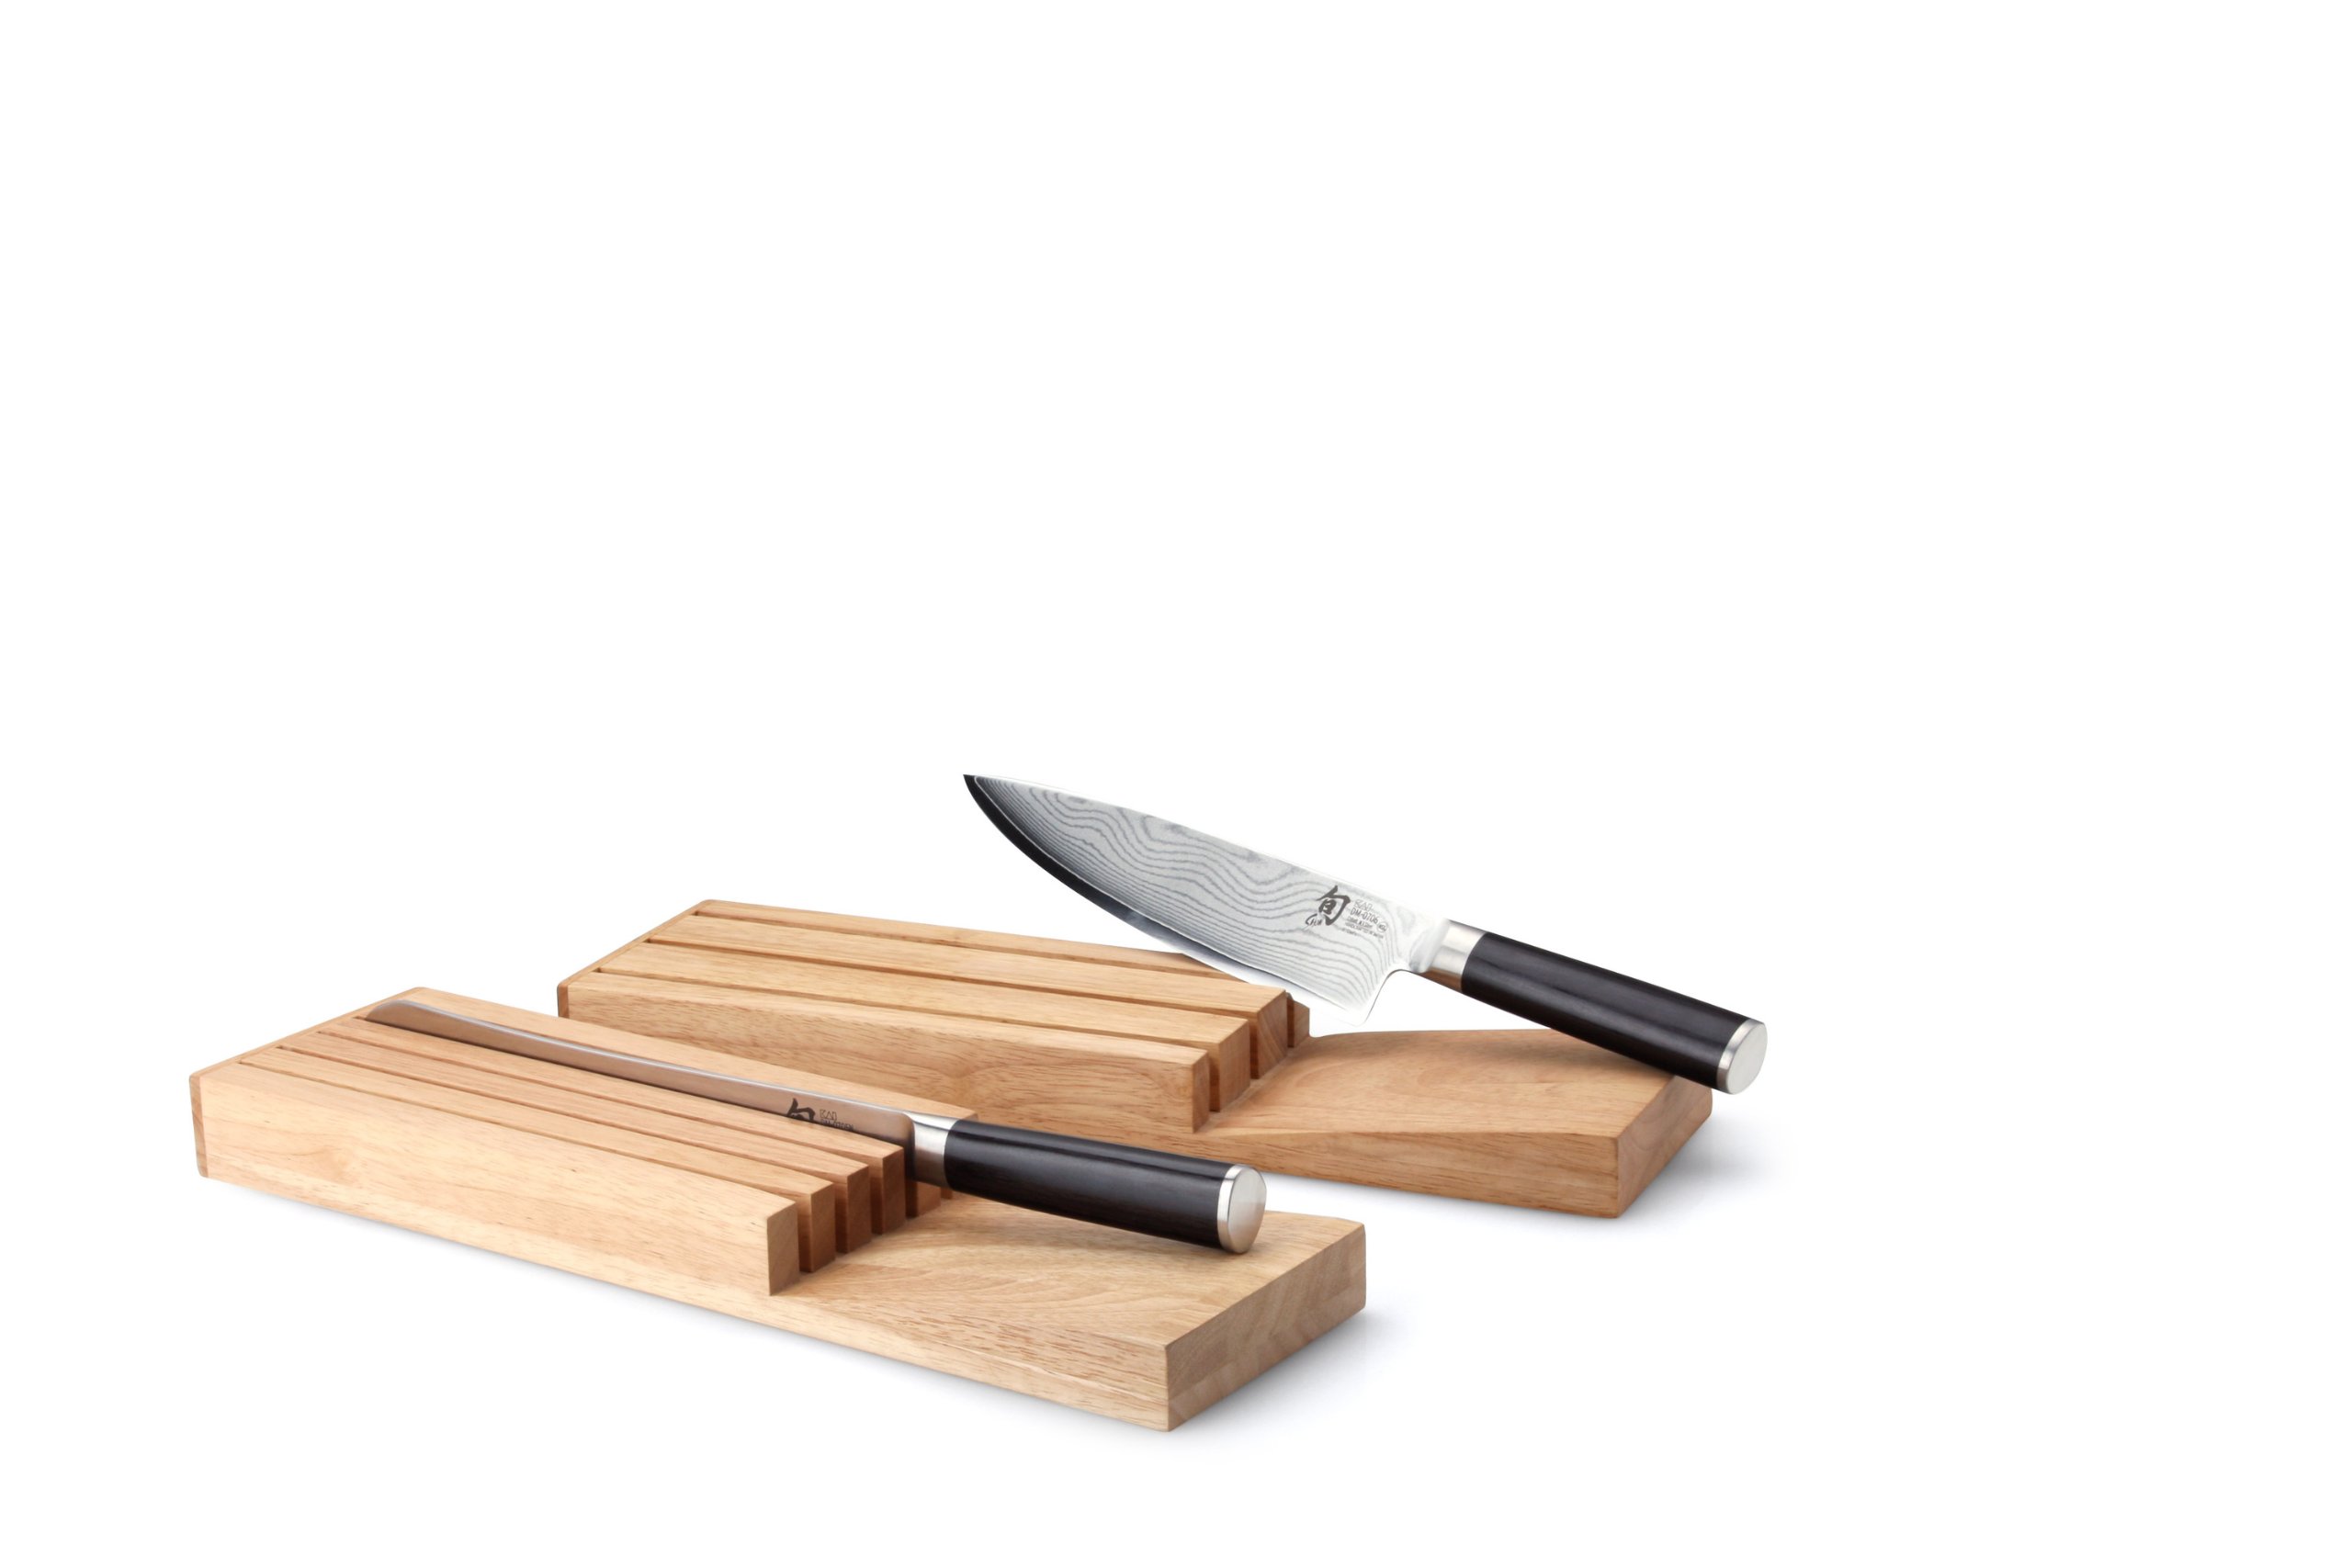 Continenta 30518 Messerblock für Schublade aus Gummibaumholz, Messerhalter, Schubladen Messerblock für 5 Messer, Größe: 39 x 11 x 3,5 cm (ohne Messer),Braun